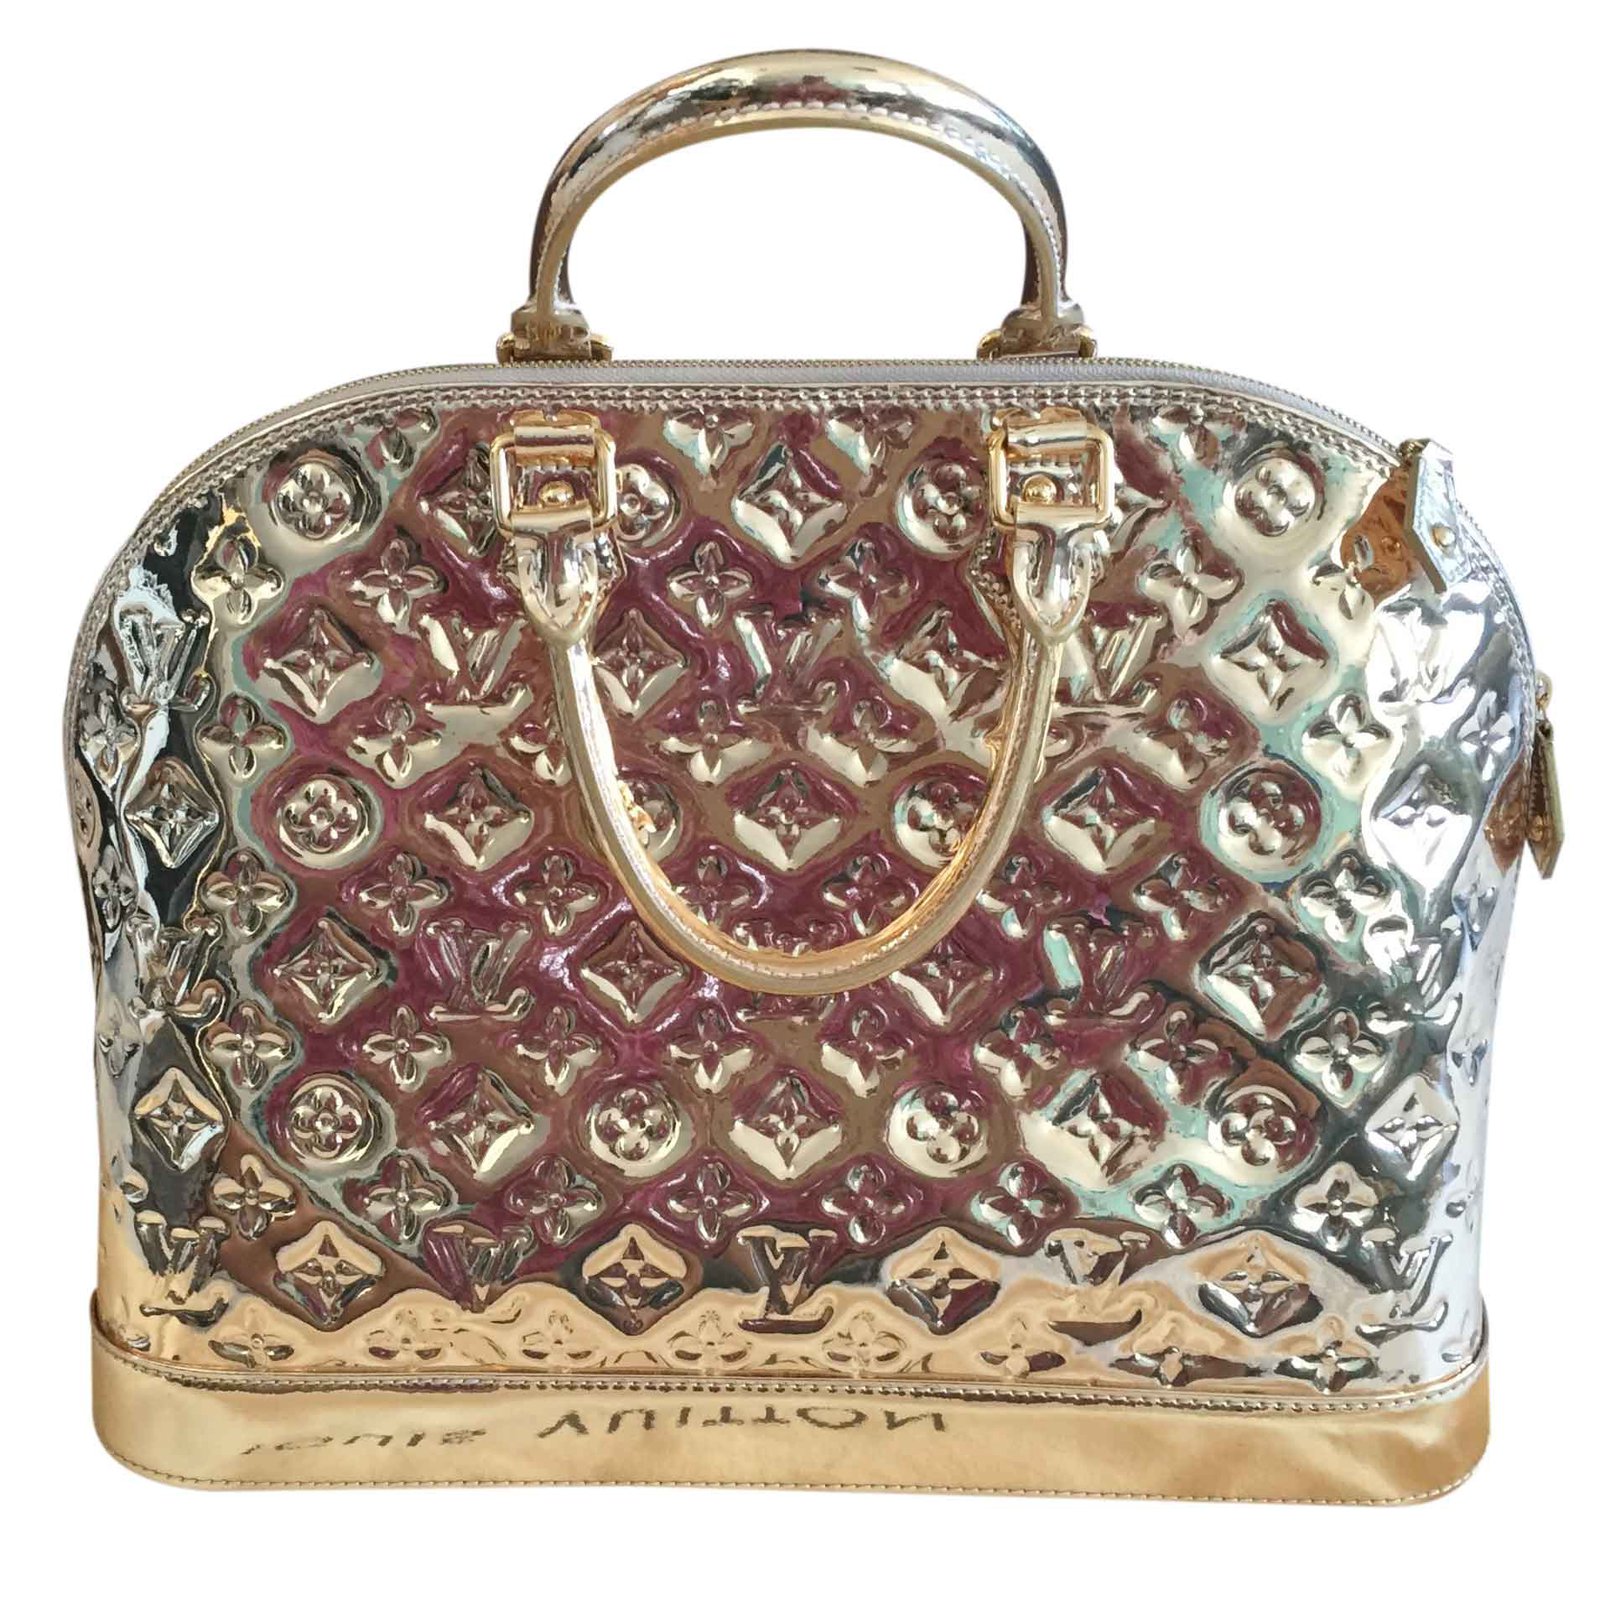 Louis Vuitton Gold Mirror Alma GM - Gold Handle Bags, Handbags - LOU25924